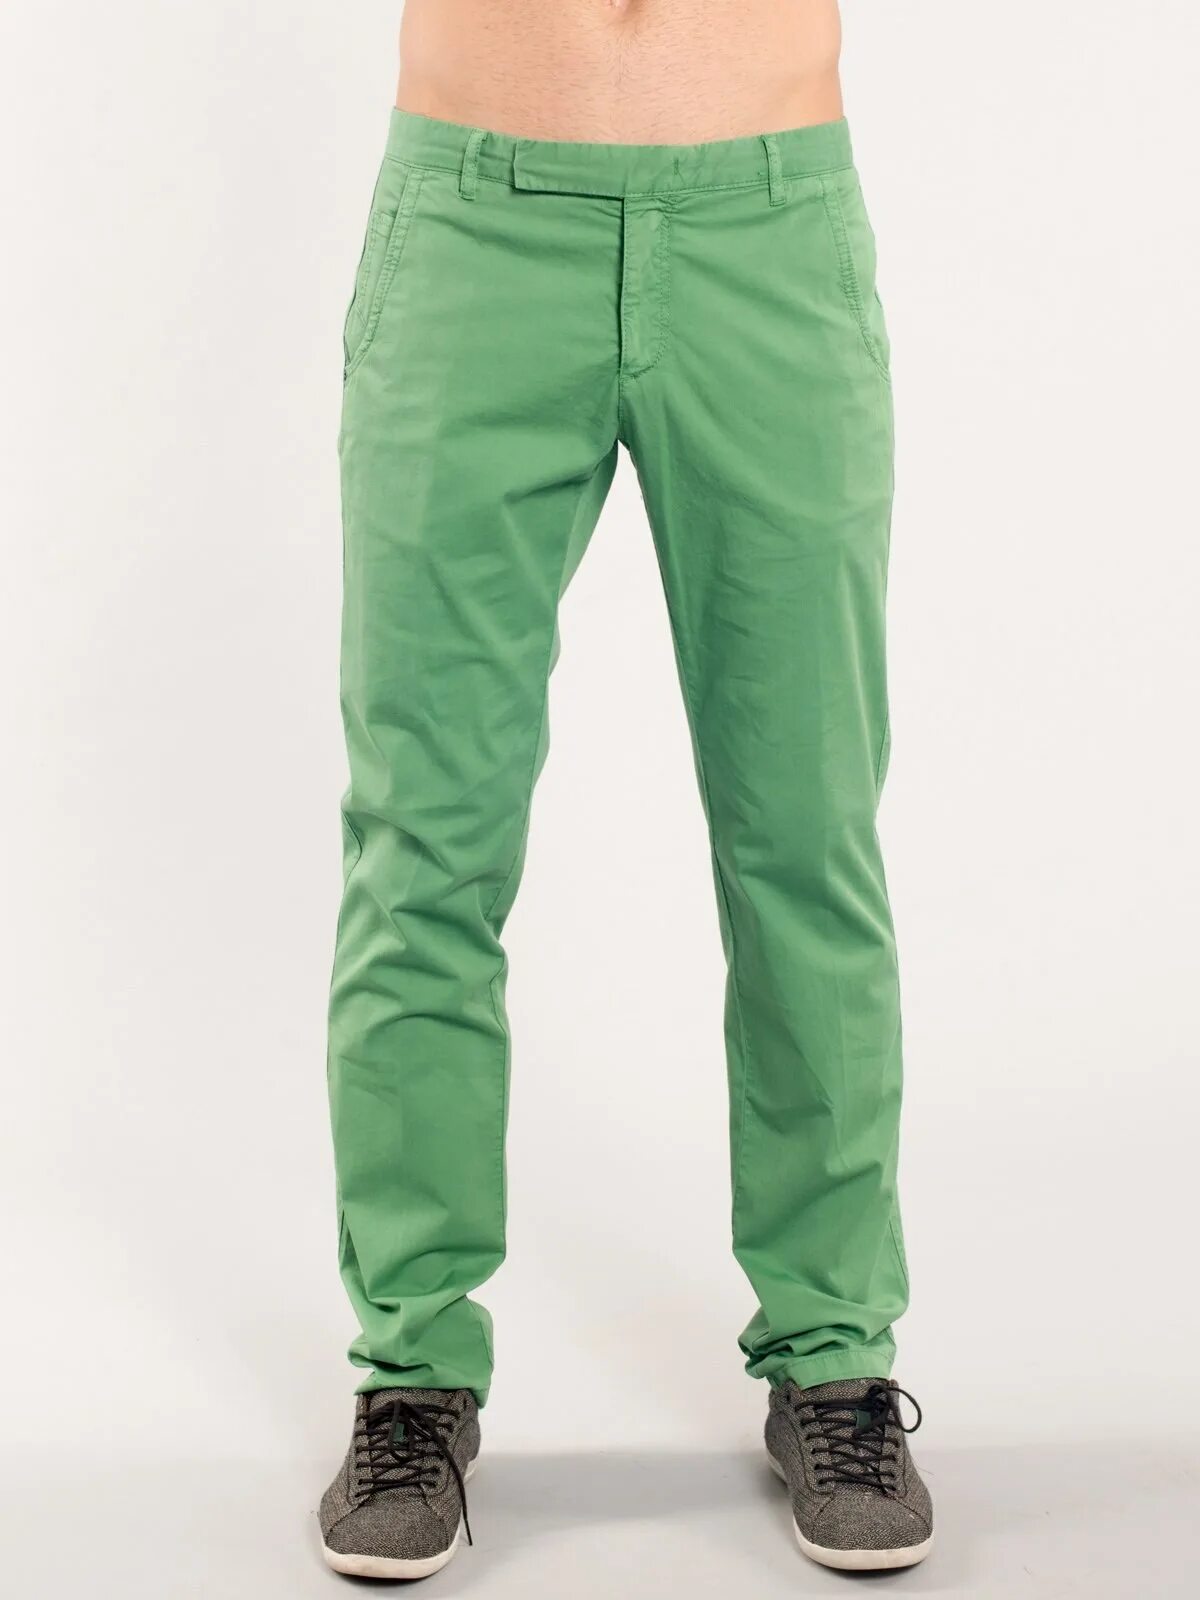 Купить зеленые штаны. Зеленые брюки мужские. Салатовые штаны мужские. Зелёные штаны мужские. Ярко зеленые мужские штаны.